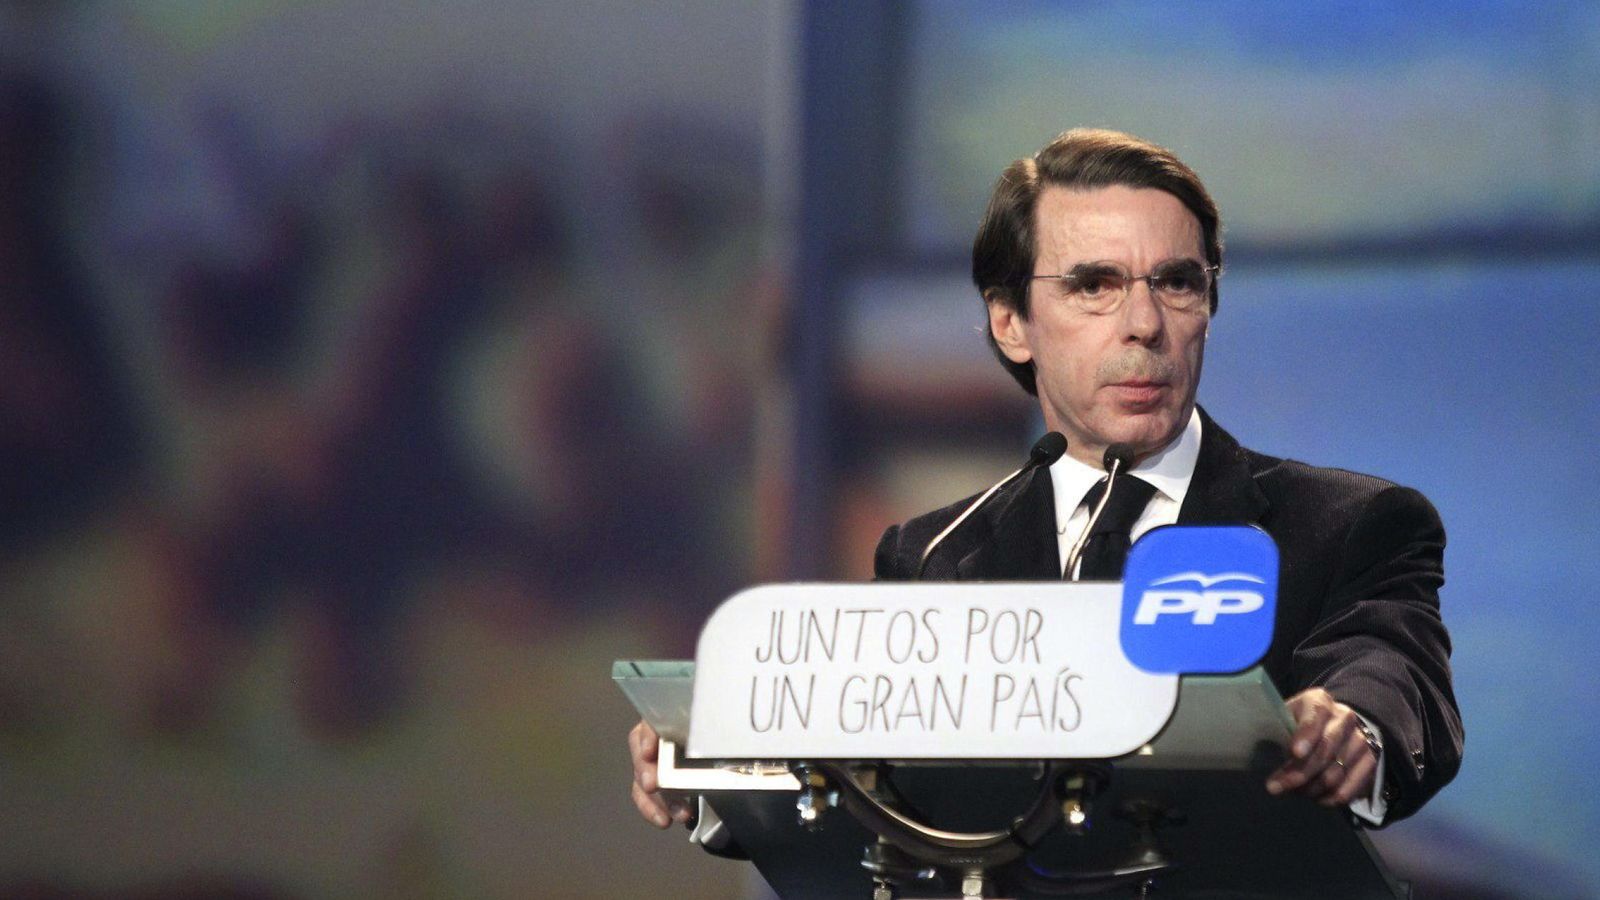 Foto: El presidente de honor del PP, José María Aznar. (EFE)